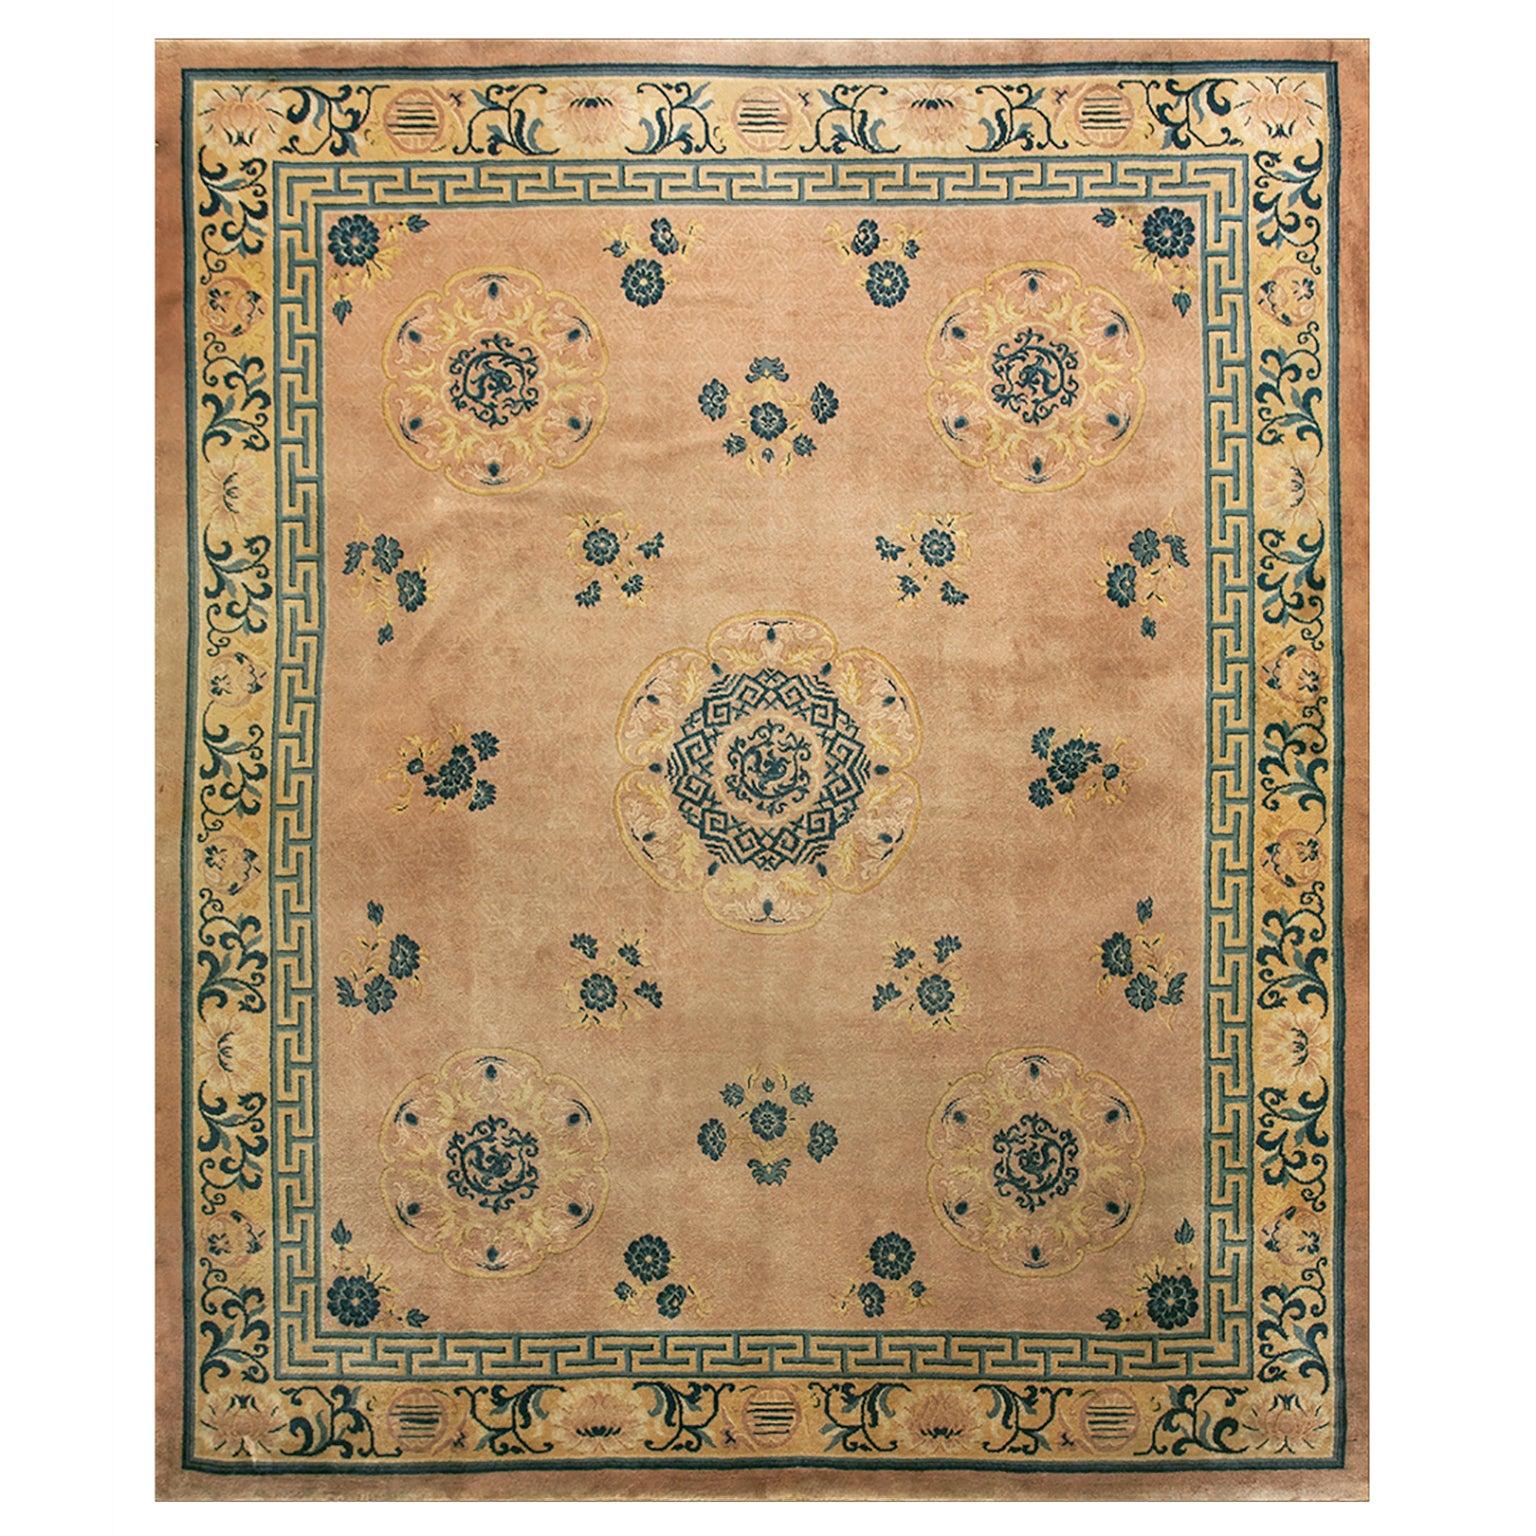 Chinesischer Teppich des frühen 20. Jahrhunderts ( 10'10" x 12'9" - 330 x 390)